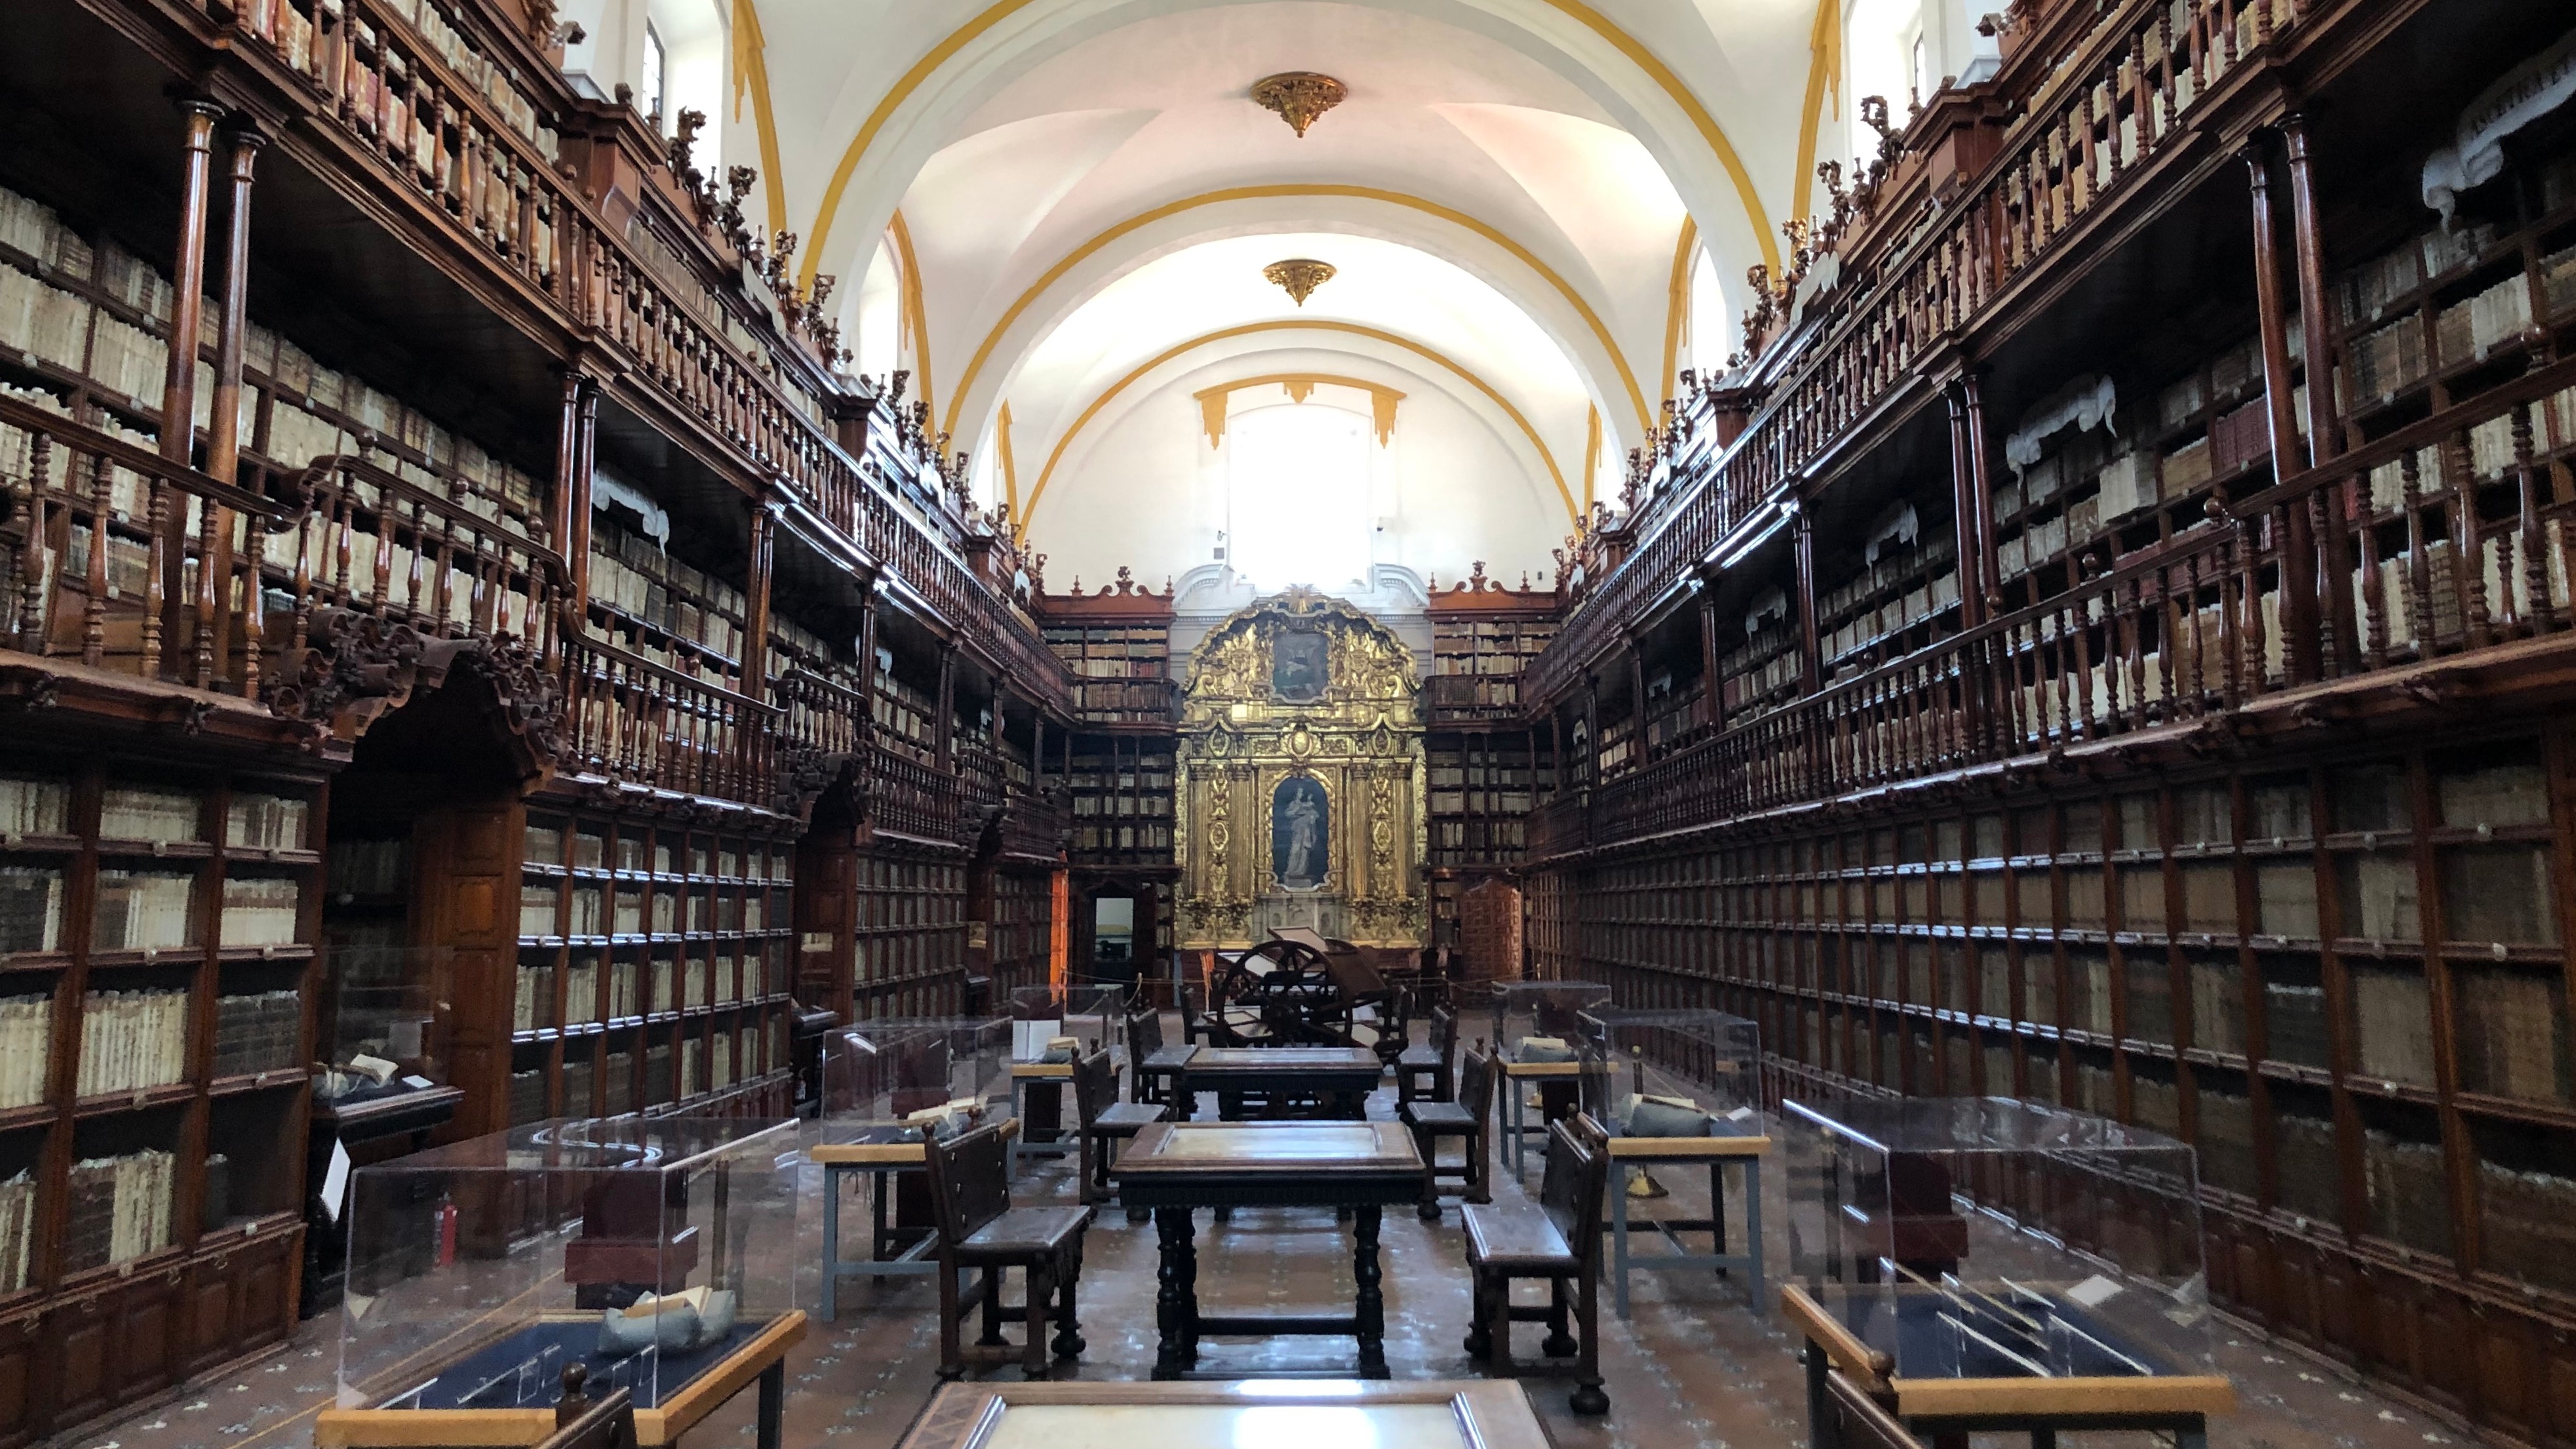 Esta biblioteca es uno de los recintos bibliográficos más importantes de nuestro país.